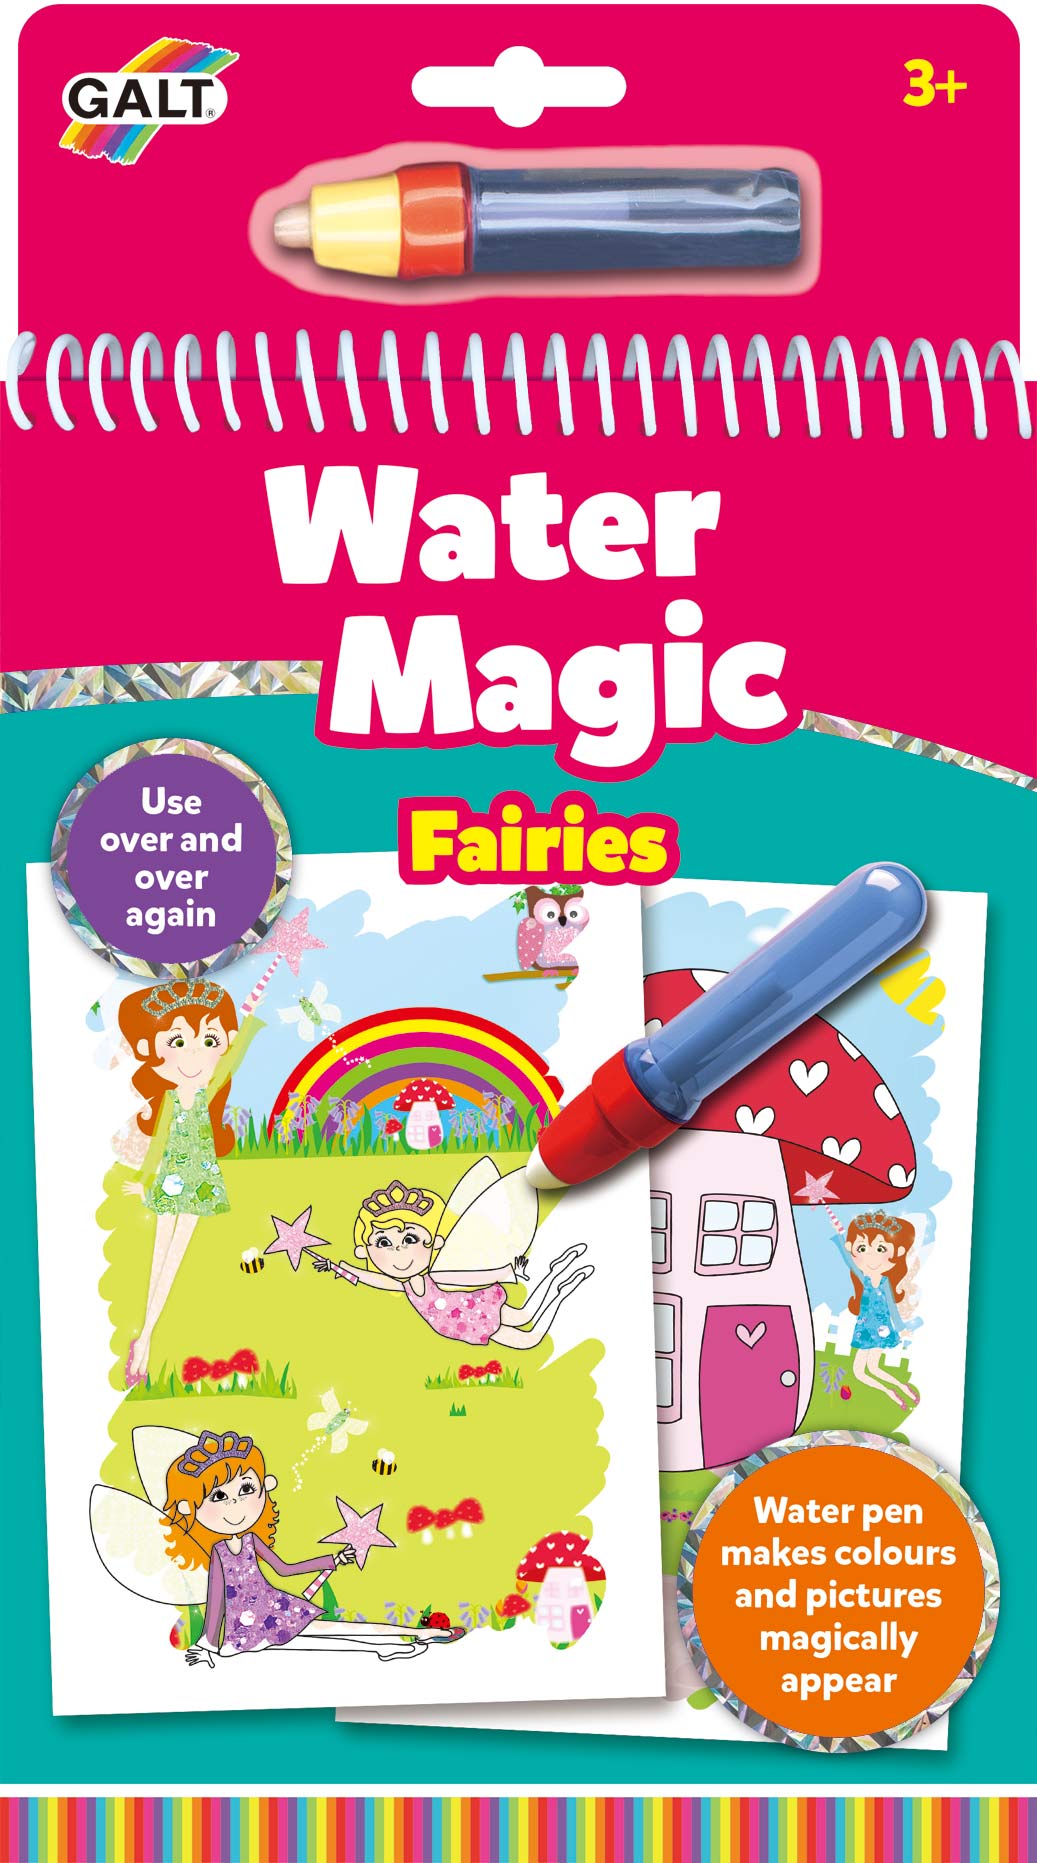 Galt Water Magic: Fairies